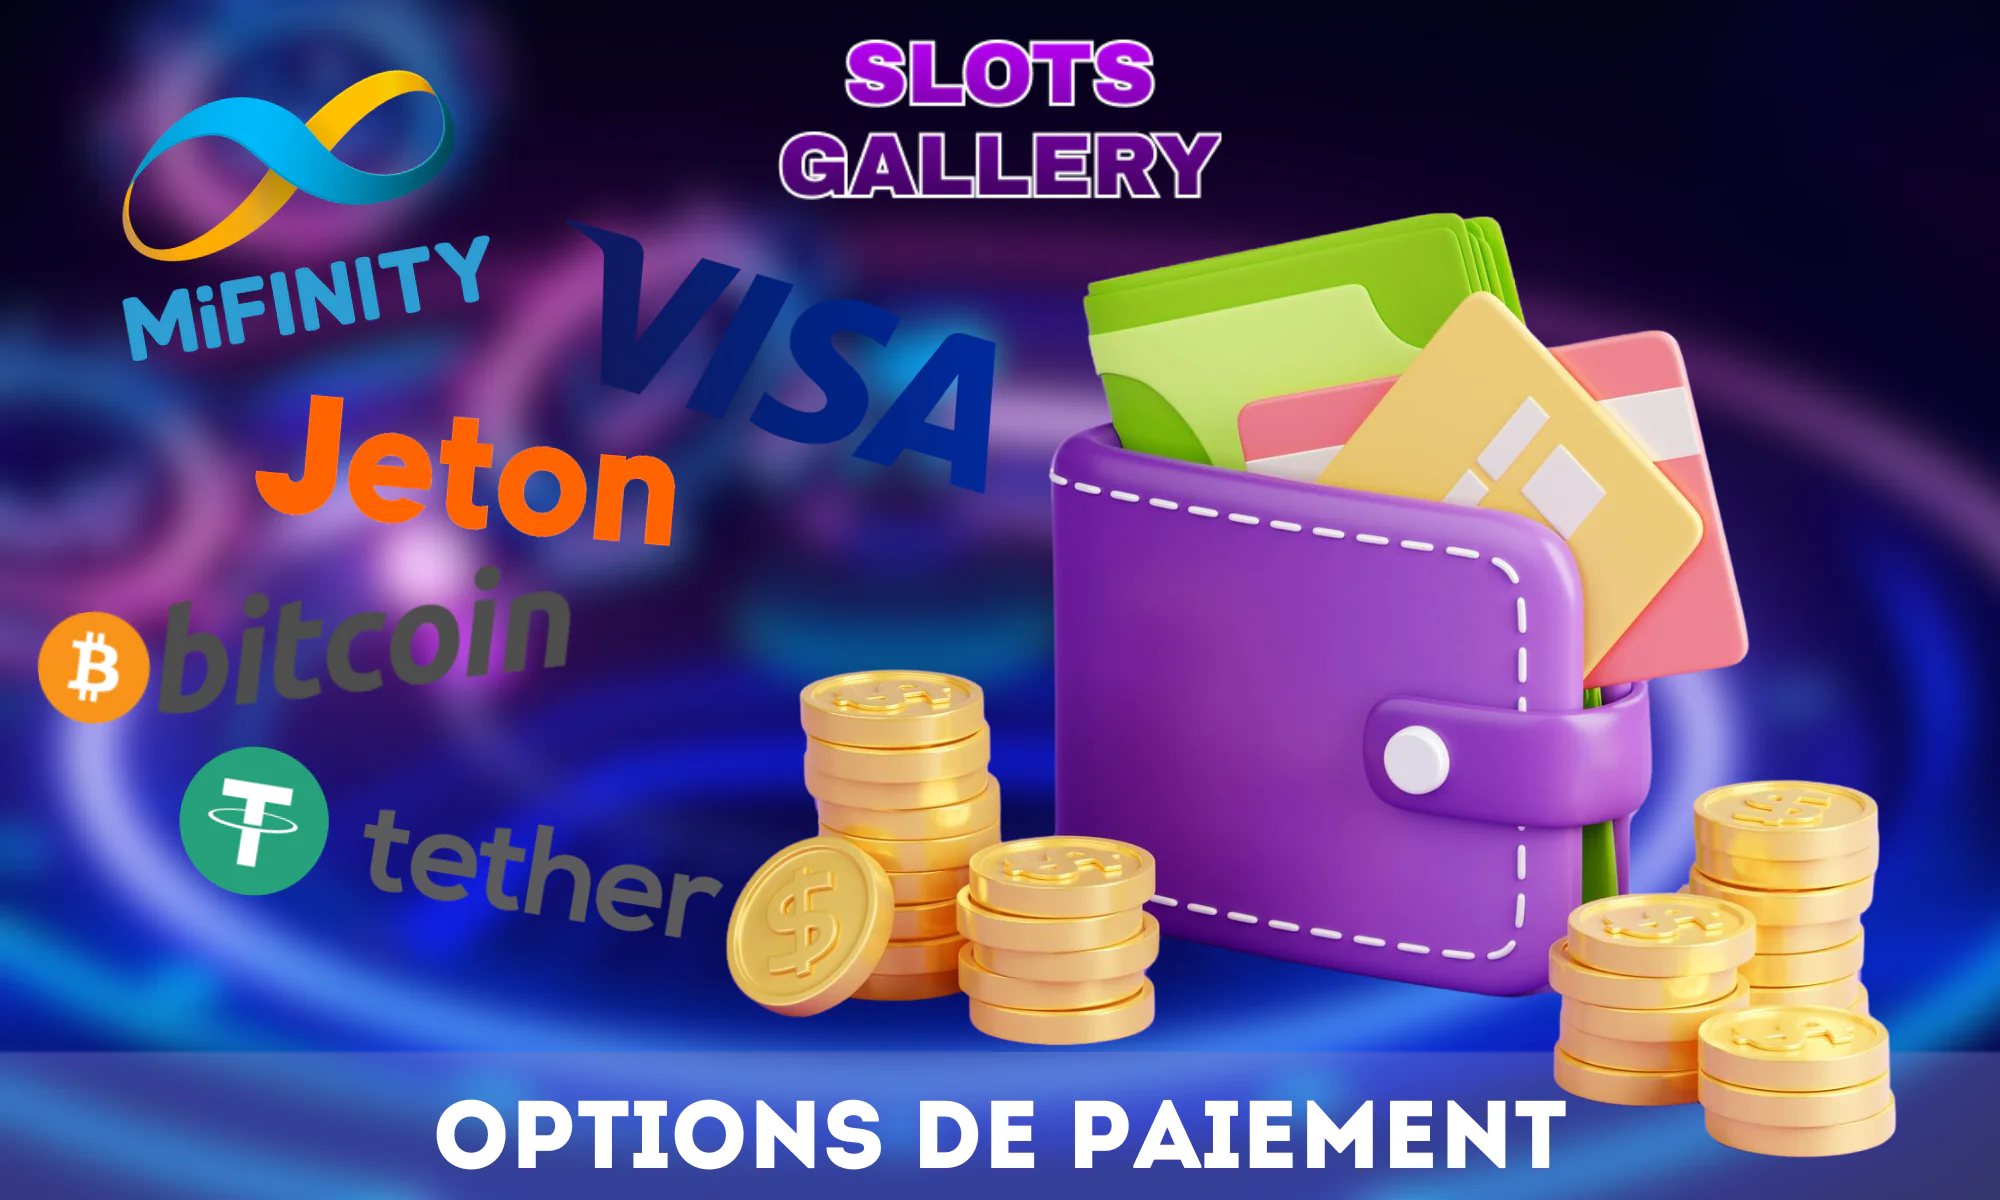 Slots Gallery Casino propose différentes méthodes de paiement